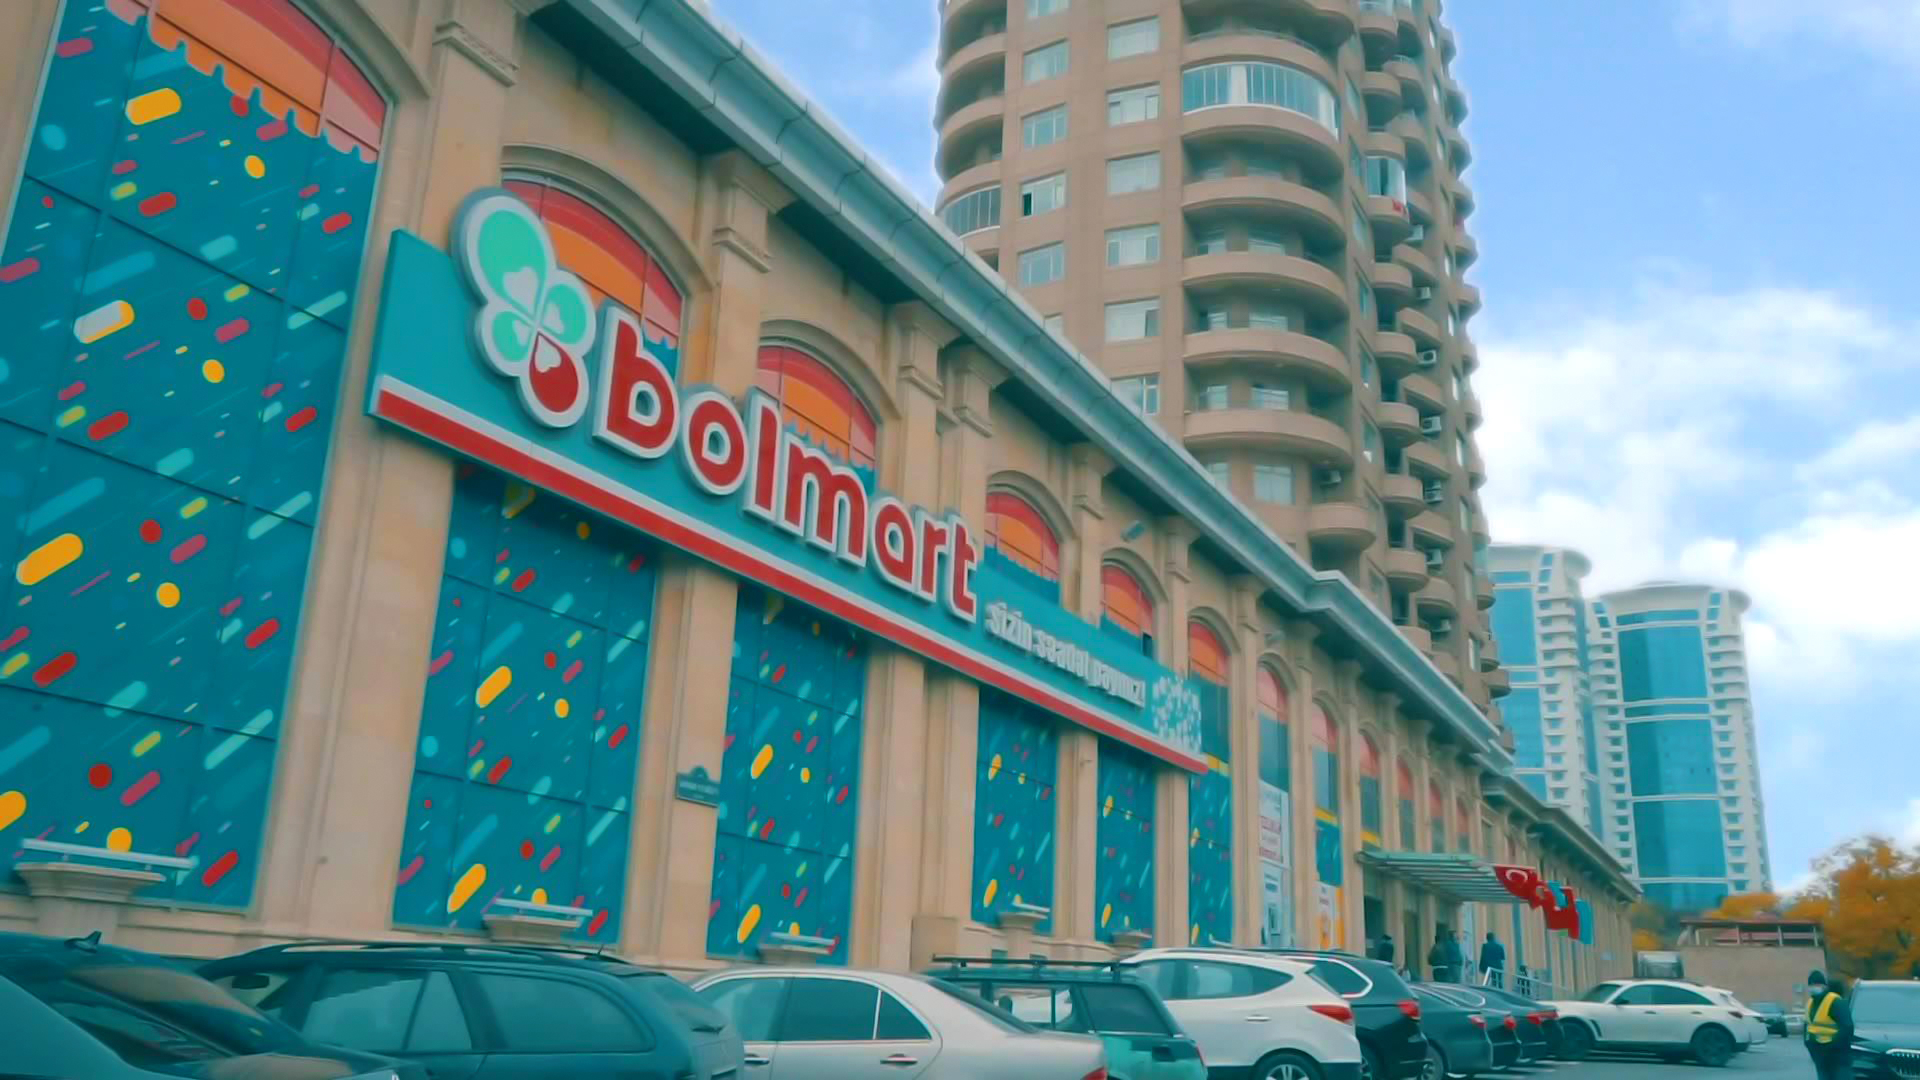 Супермаркет "Bolmart" распространил заявление